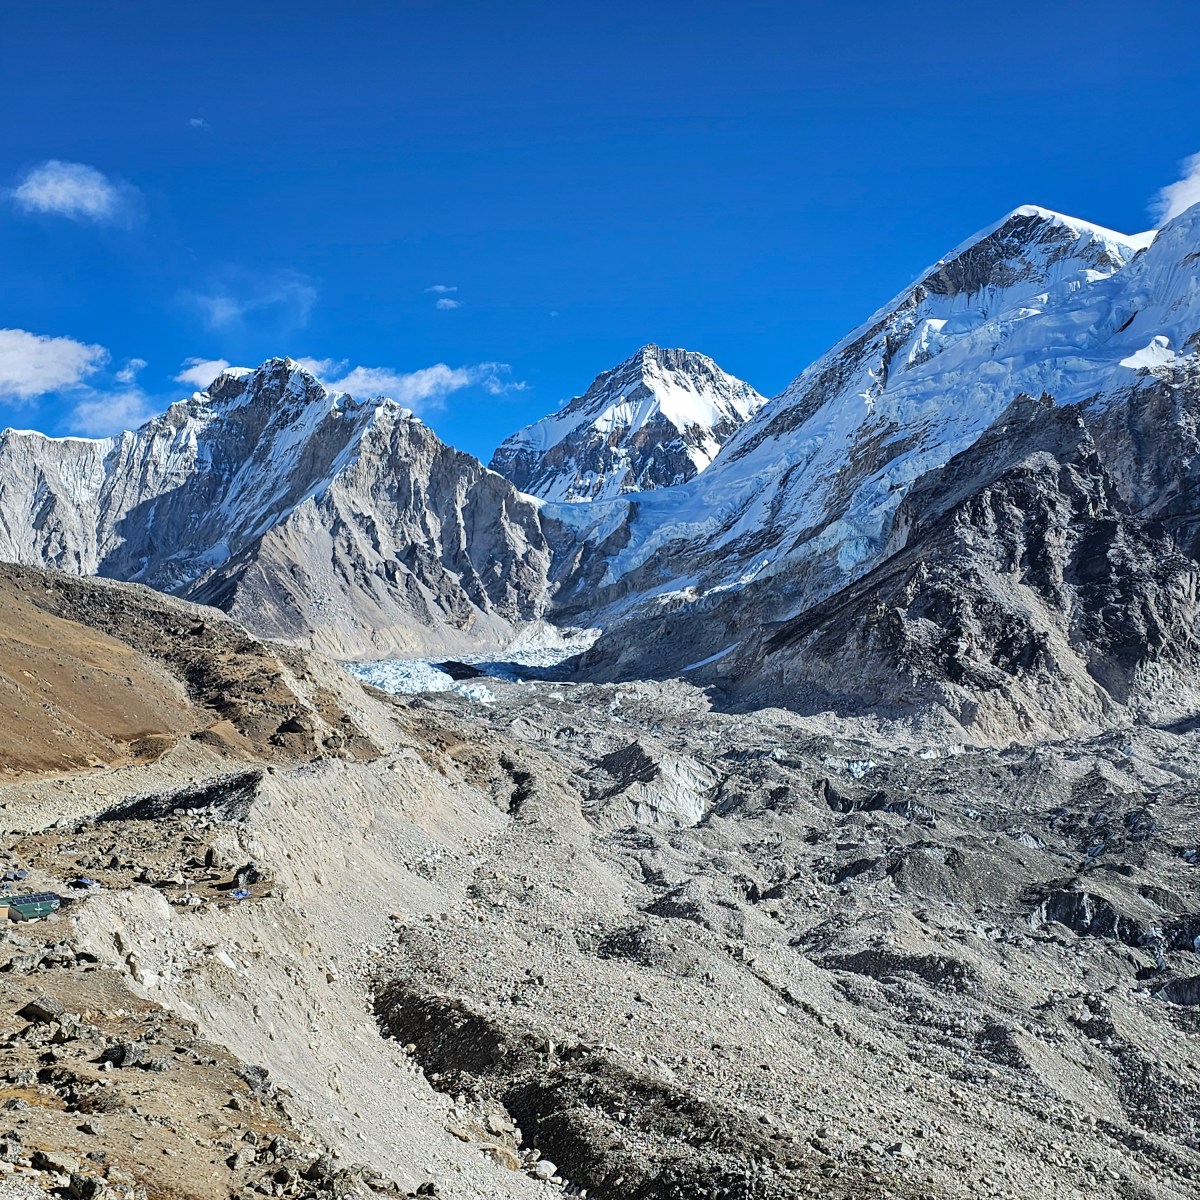 Tips for the Everest Base Camp Trek